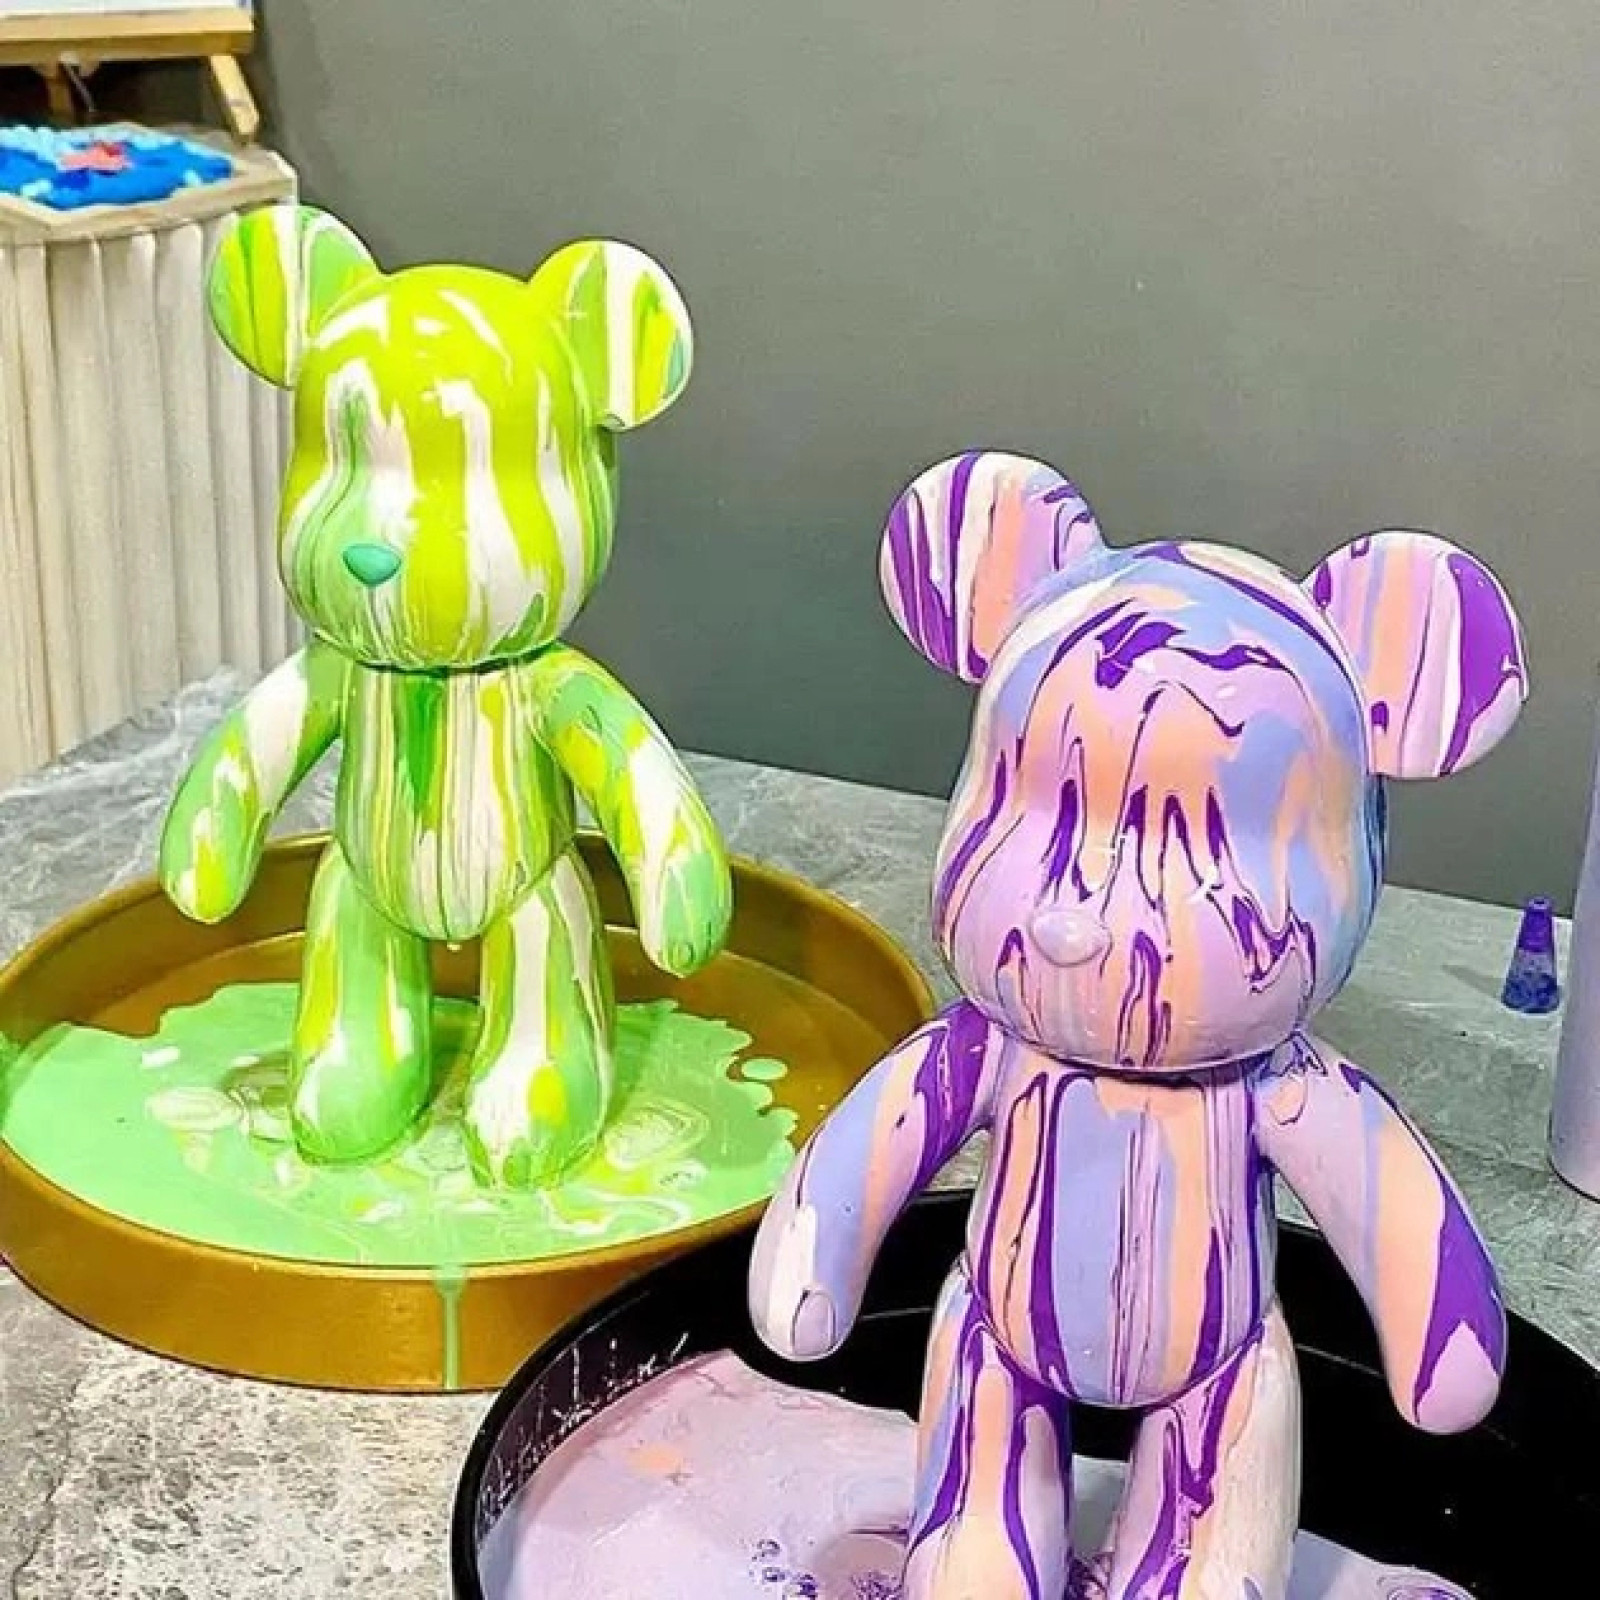 Флюидный медвежонок Punk Fluid Bear Bearbrick с красками, набор для творчества сделай сам DIY 23 см 207574